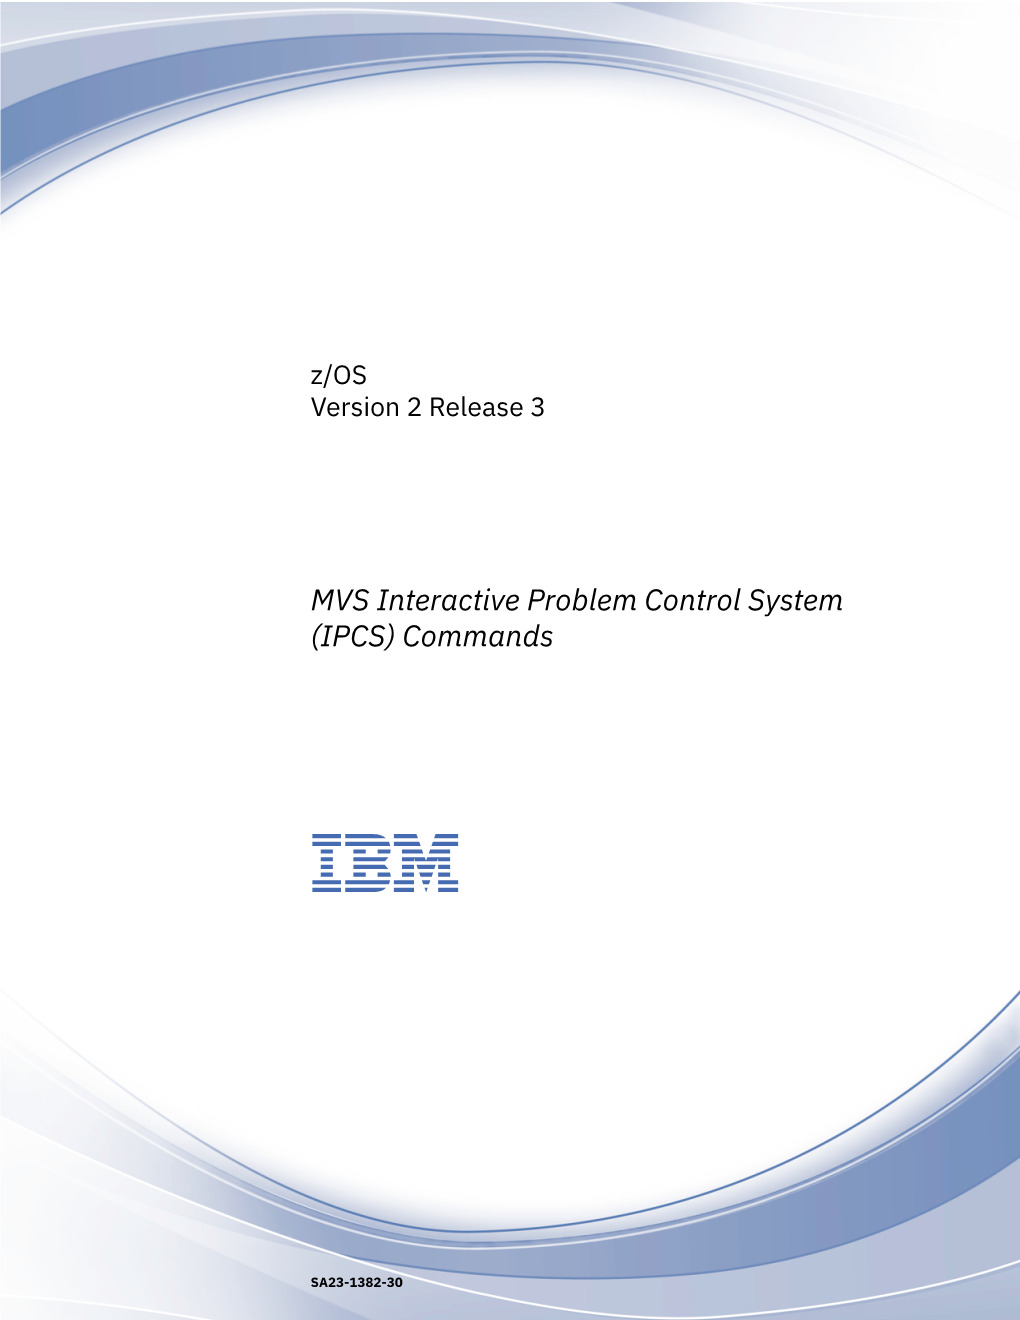 MVS Interactive Problem Control System (IPCS) Commands